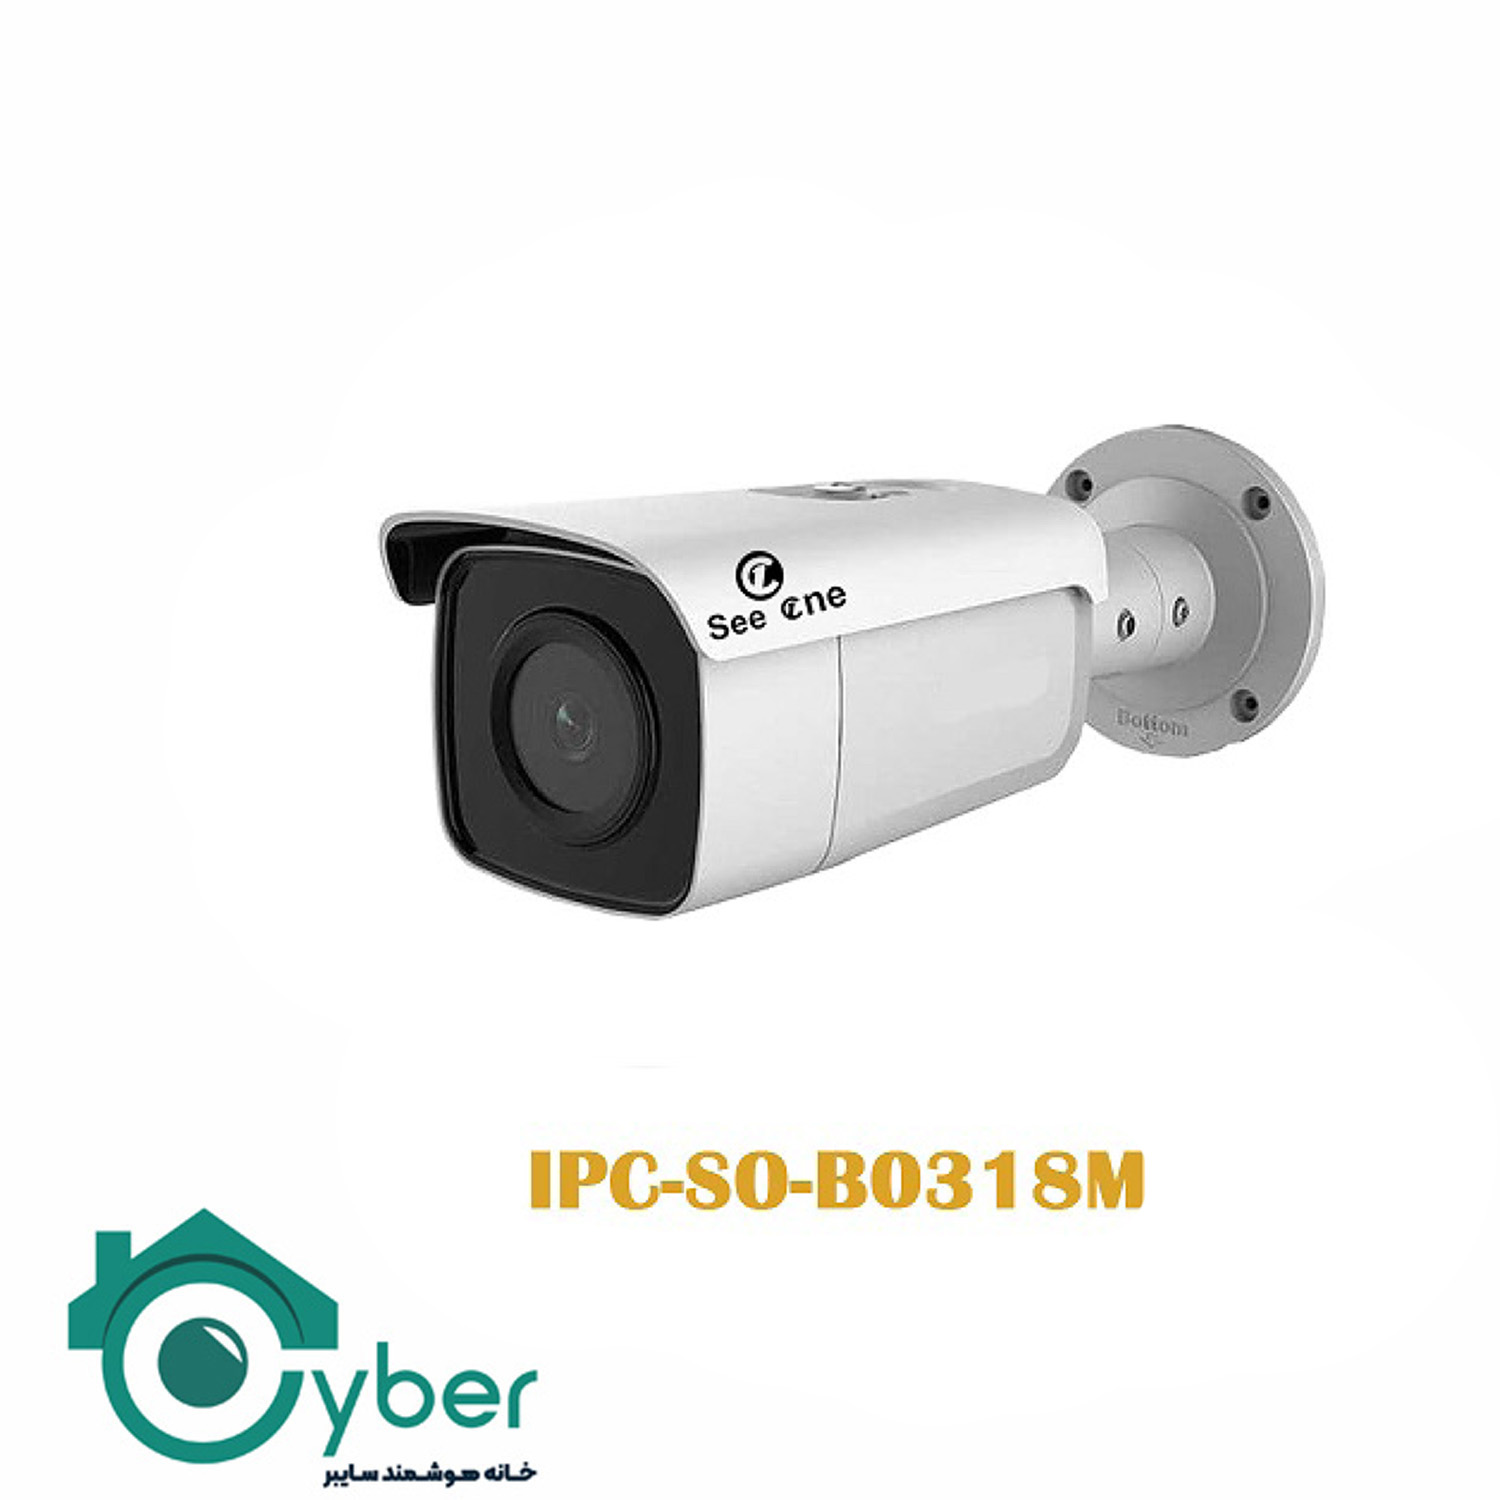 دوربین تحت شبکه See one مدل IPC-S0-B0318M - سیوان